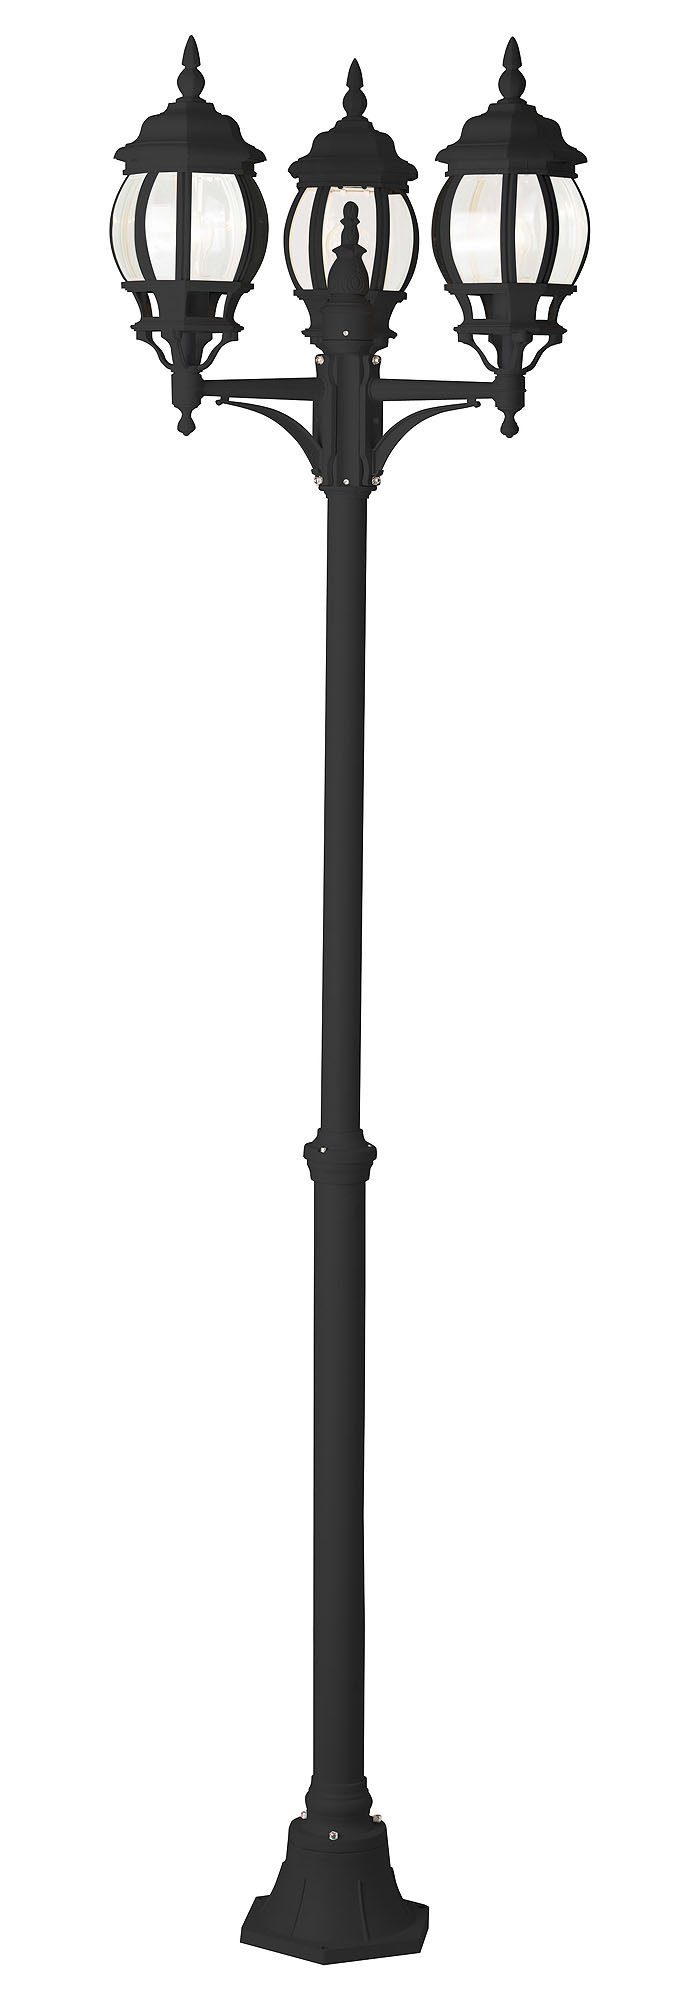 Brilliant Außen-Stehlampe Istria, ohne Leuchtmittel, 235 cm Höhe, Ø 52 cm, 3 x E27, IP23, Alu-Druckguss/Glas, schwarz | Standleuchten